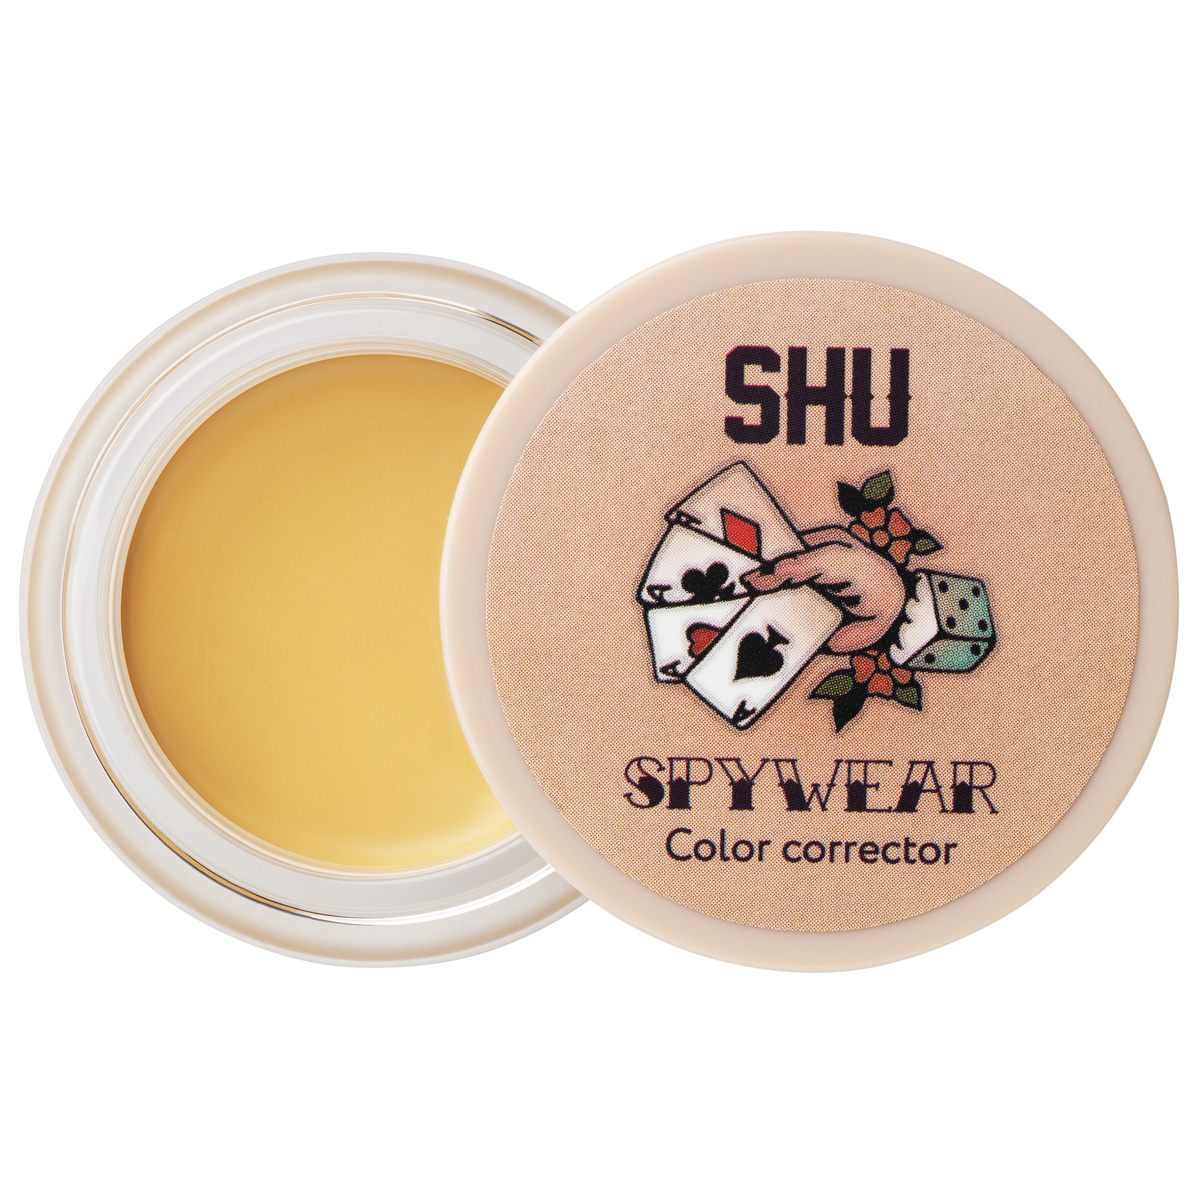 shu корректор высокопигментированный для лица 32 зеленый spywear 2 8 гр Корректор для лица SHU высокопигментированный Spywear тон 33 желтый